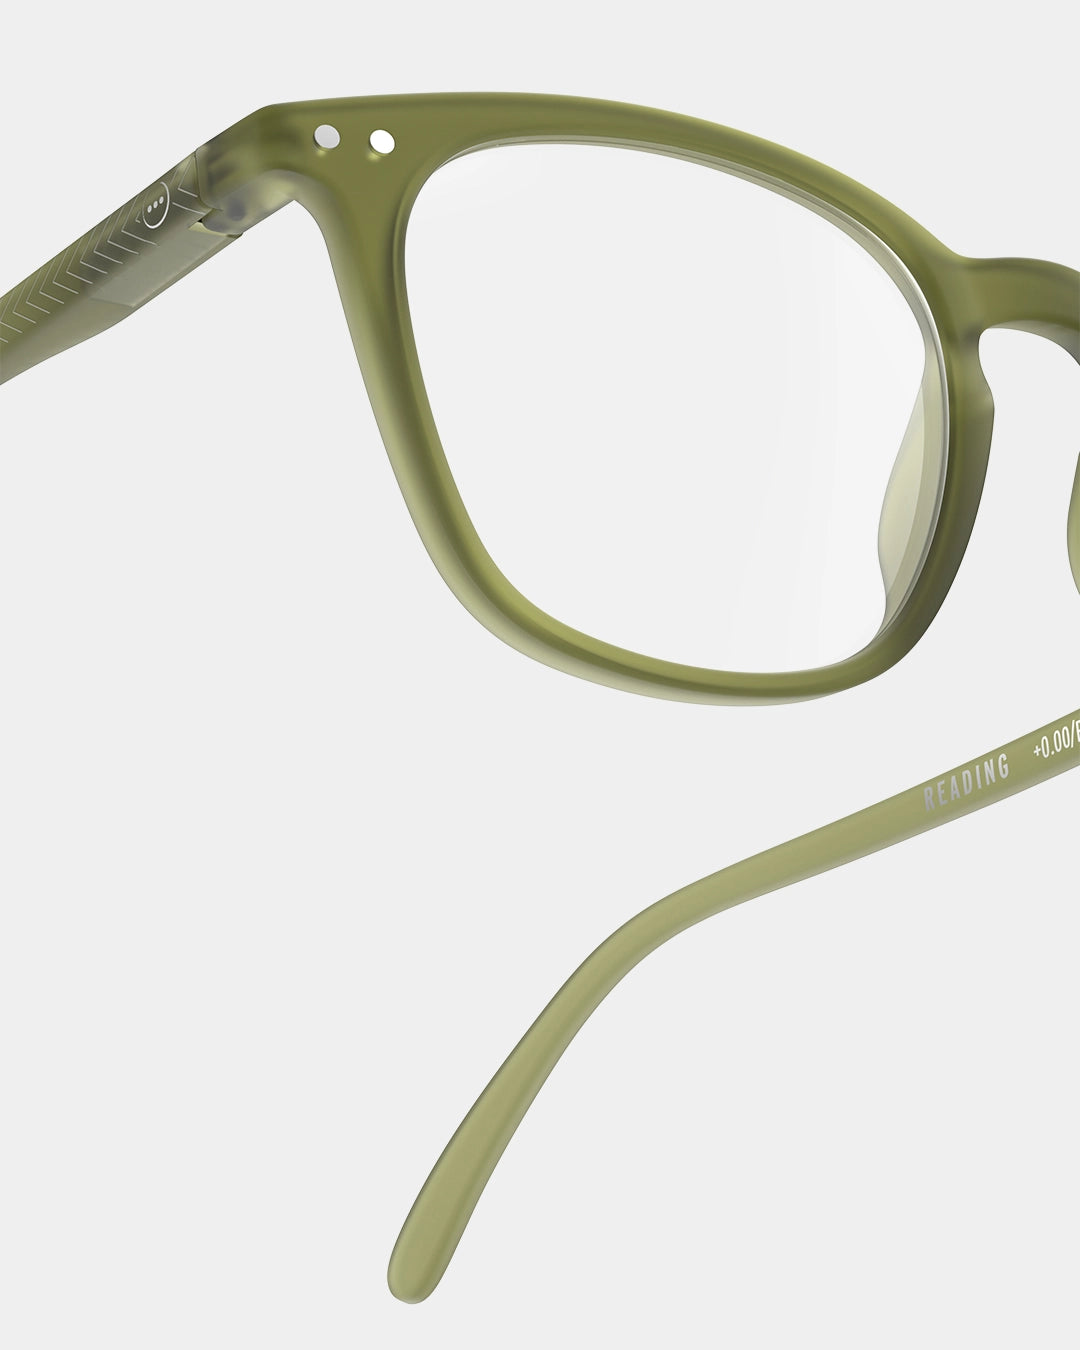 IZIPIZI #E Tailor Green Reading Glasses